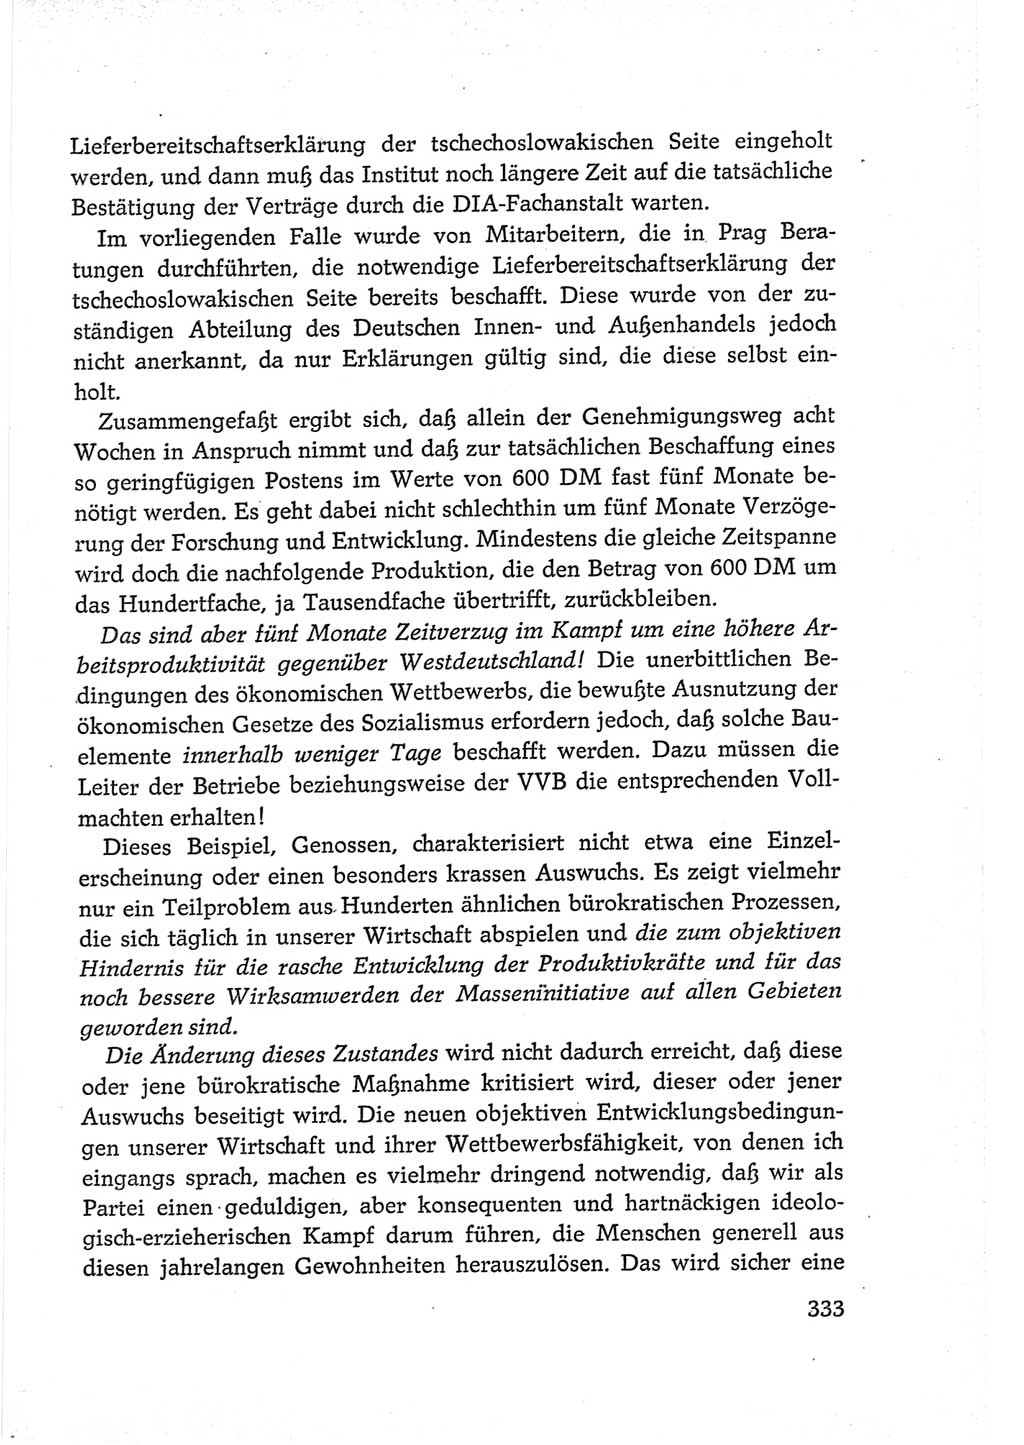 Protokoll der Verhandlungen des Ⅵ. Parteitages der Sozialistischen Einheitspartei Deutschlands (SED) [Deutsche Demokratische Republik (DDR)] 1963, Band Ⅲ, Seite 333 (Prot. Verh. Ⅵ. PT SED DDR 1963, Bd. Ⅲ, S. 333)